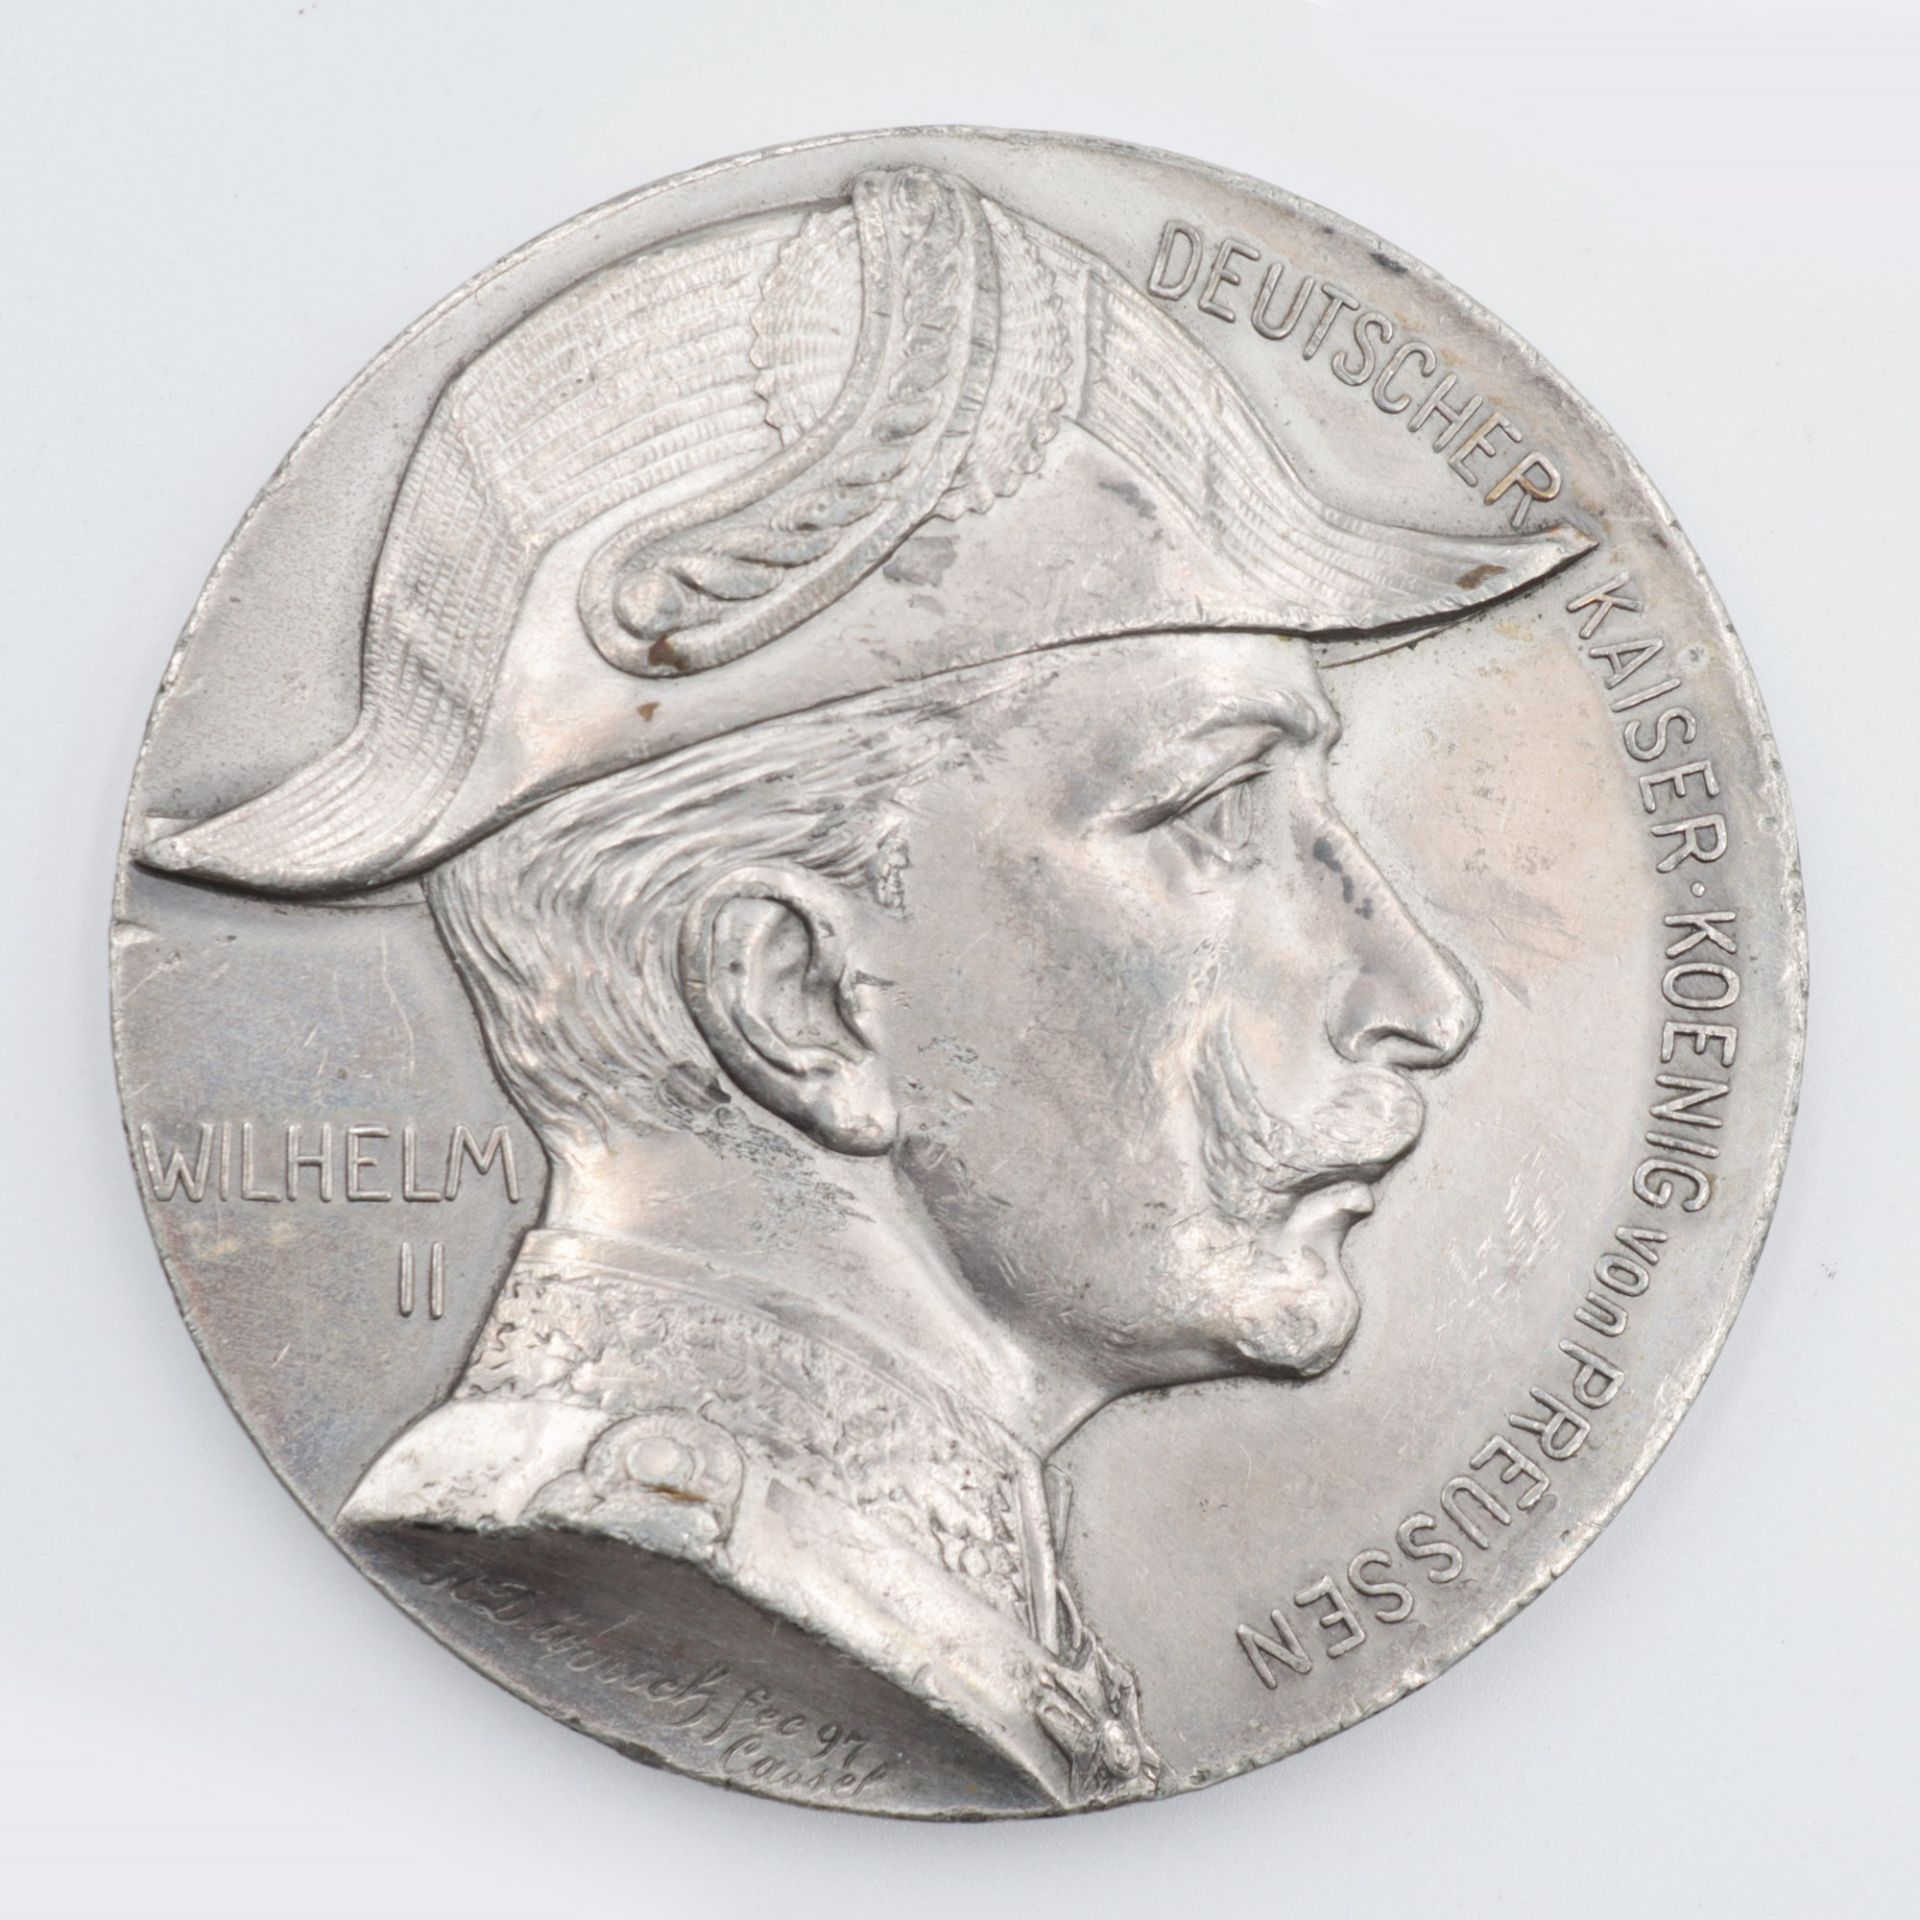 Medaille - Wilhelm II. 1897, Bronze versilbert, Vorderseite: Profil Wilhelms II, "Deutscher Kaiser